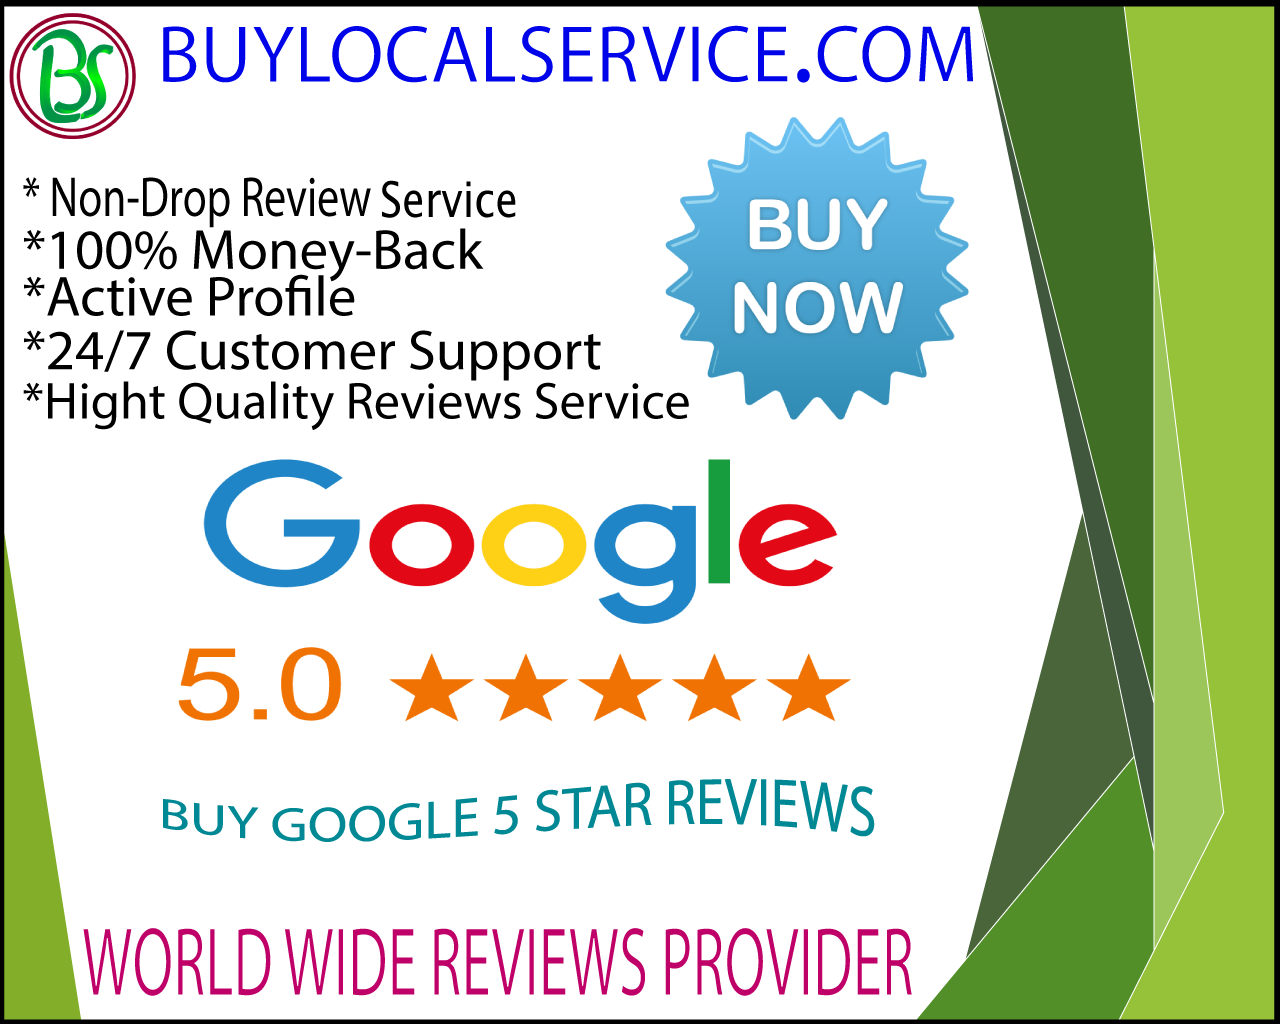 Buy Google 5 Star Reviews - 100% Non Drop 5 Star Reviews